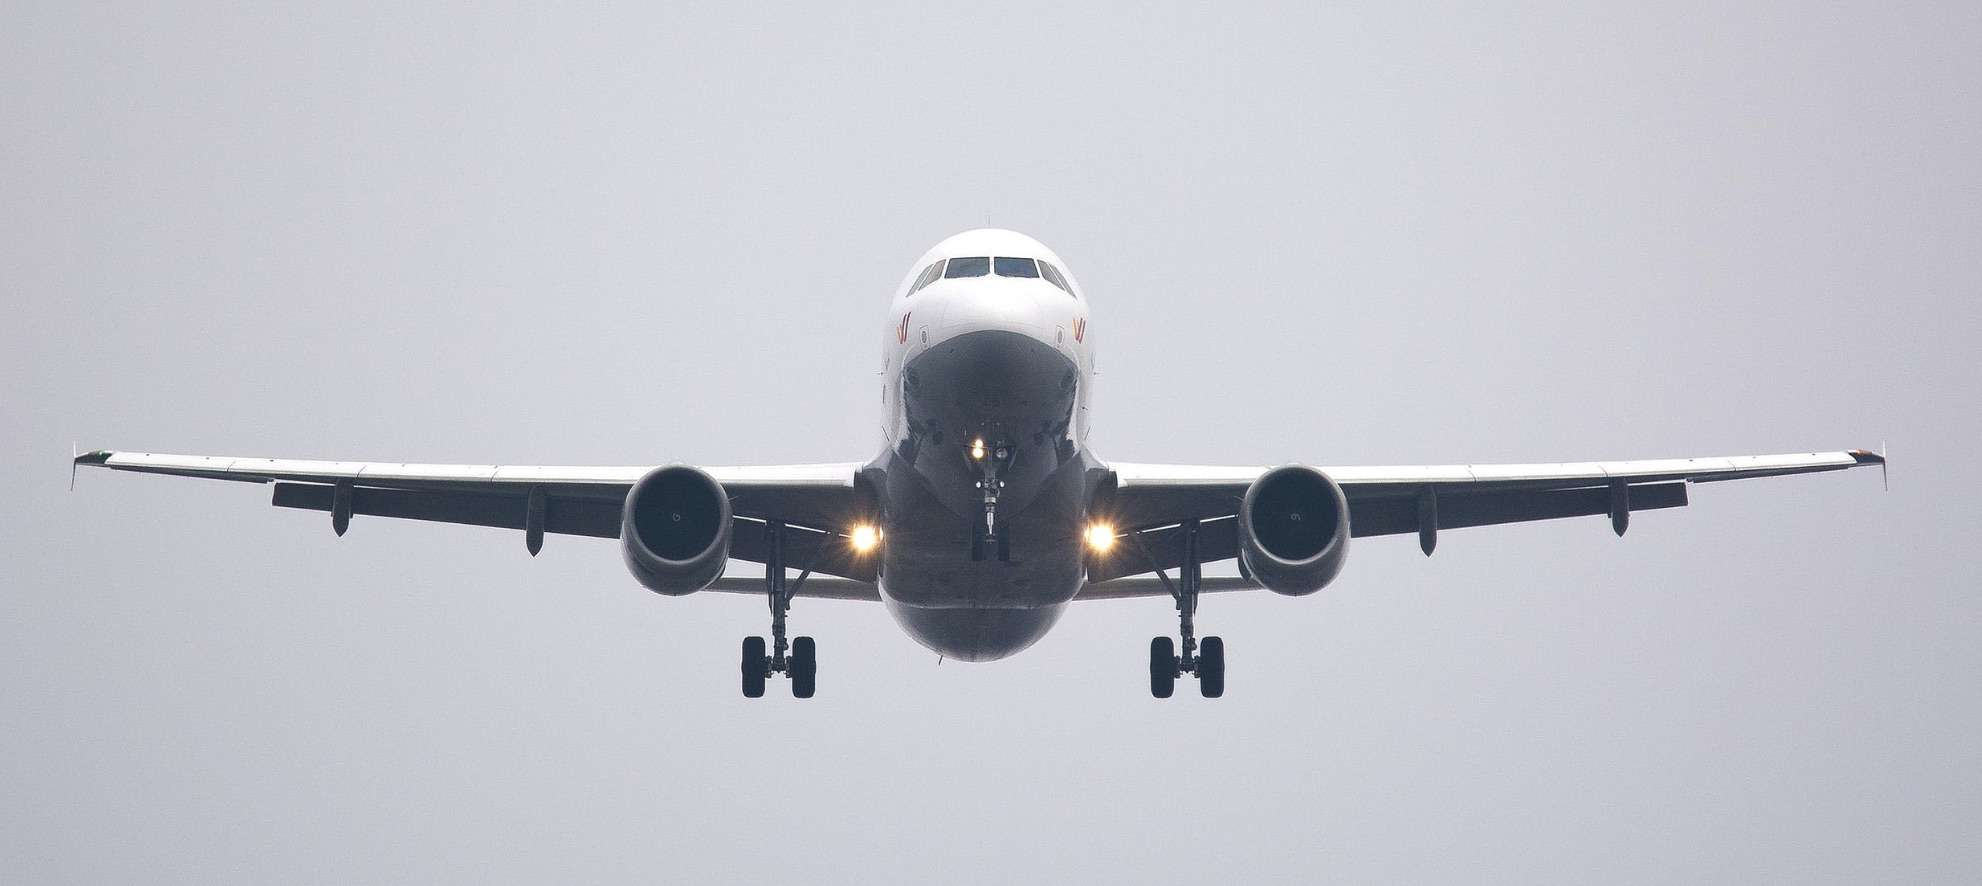 L’aéroport Pearson de Mississauga est en tête du monde avec 52 % des vols retardés